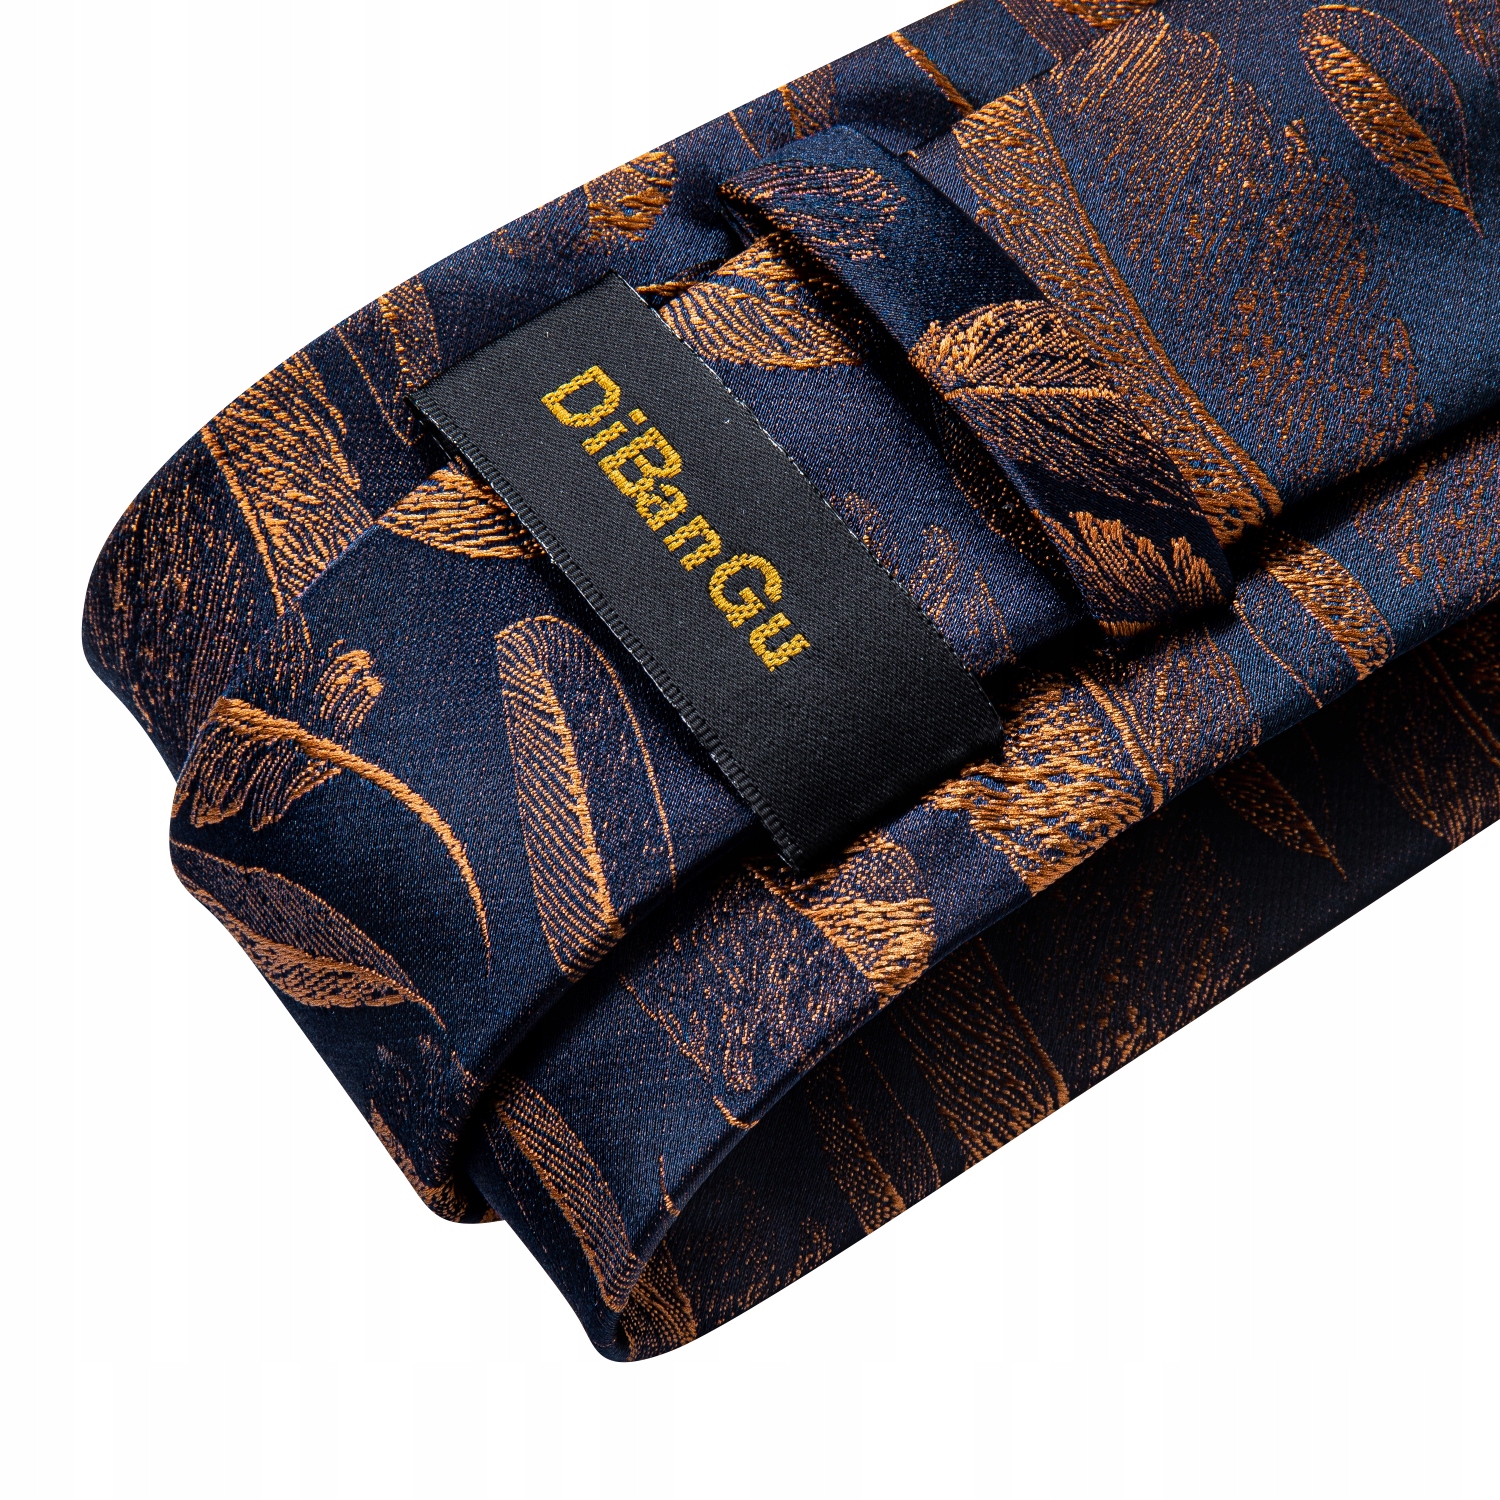 Шелковый жаккардовый галстук запонки нагрудный платок набор вес продукта с единичной упаковкой 0,8 кг